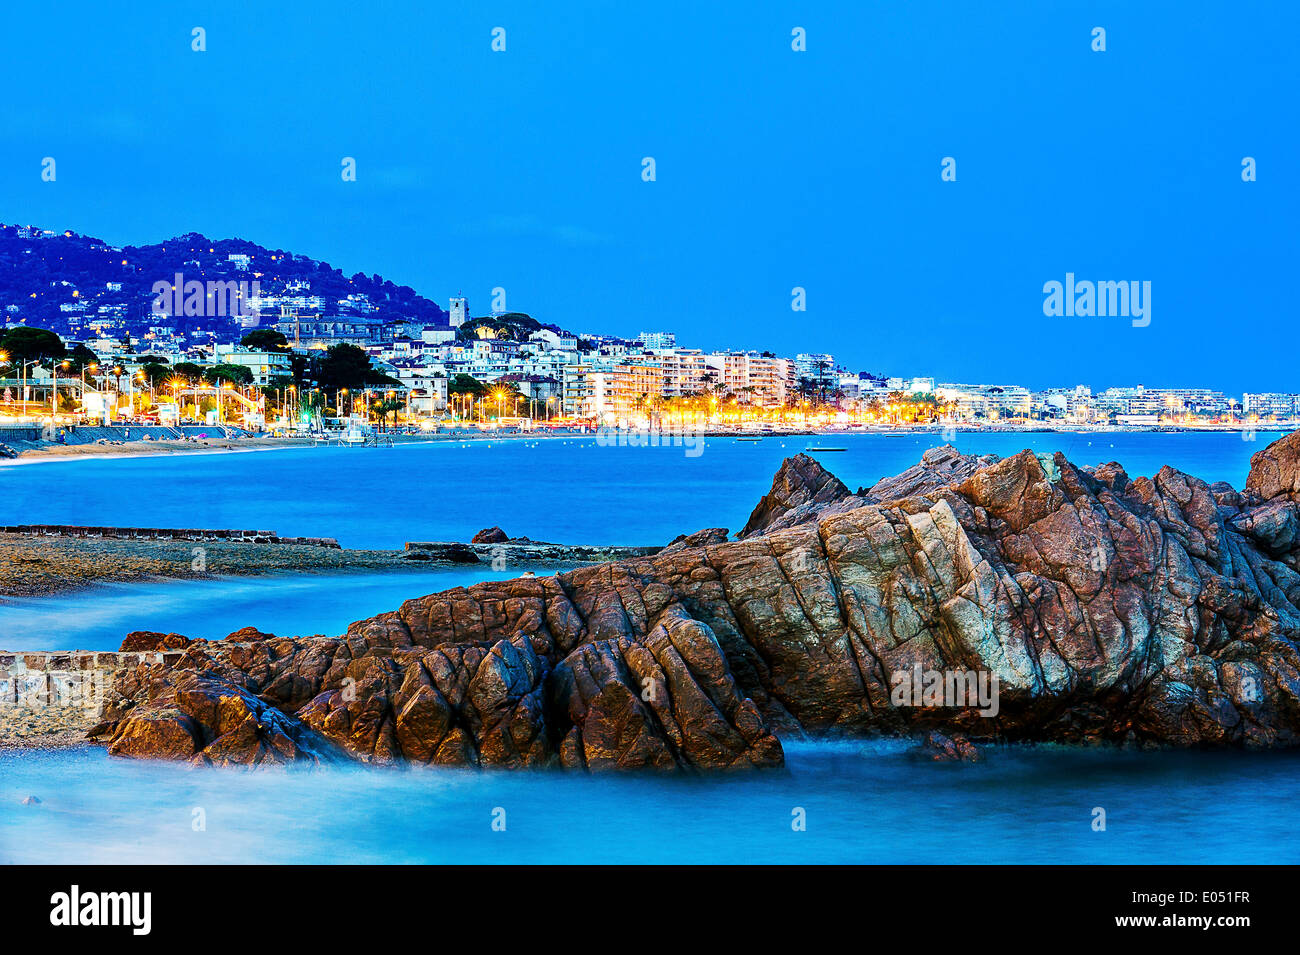 L'Europa, Francia, Alpes-Maritimes, Cannes. La baia di Cannes al tramonto. Foto Stock